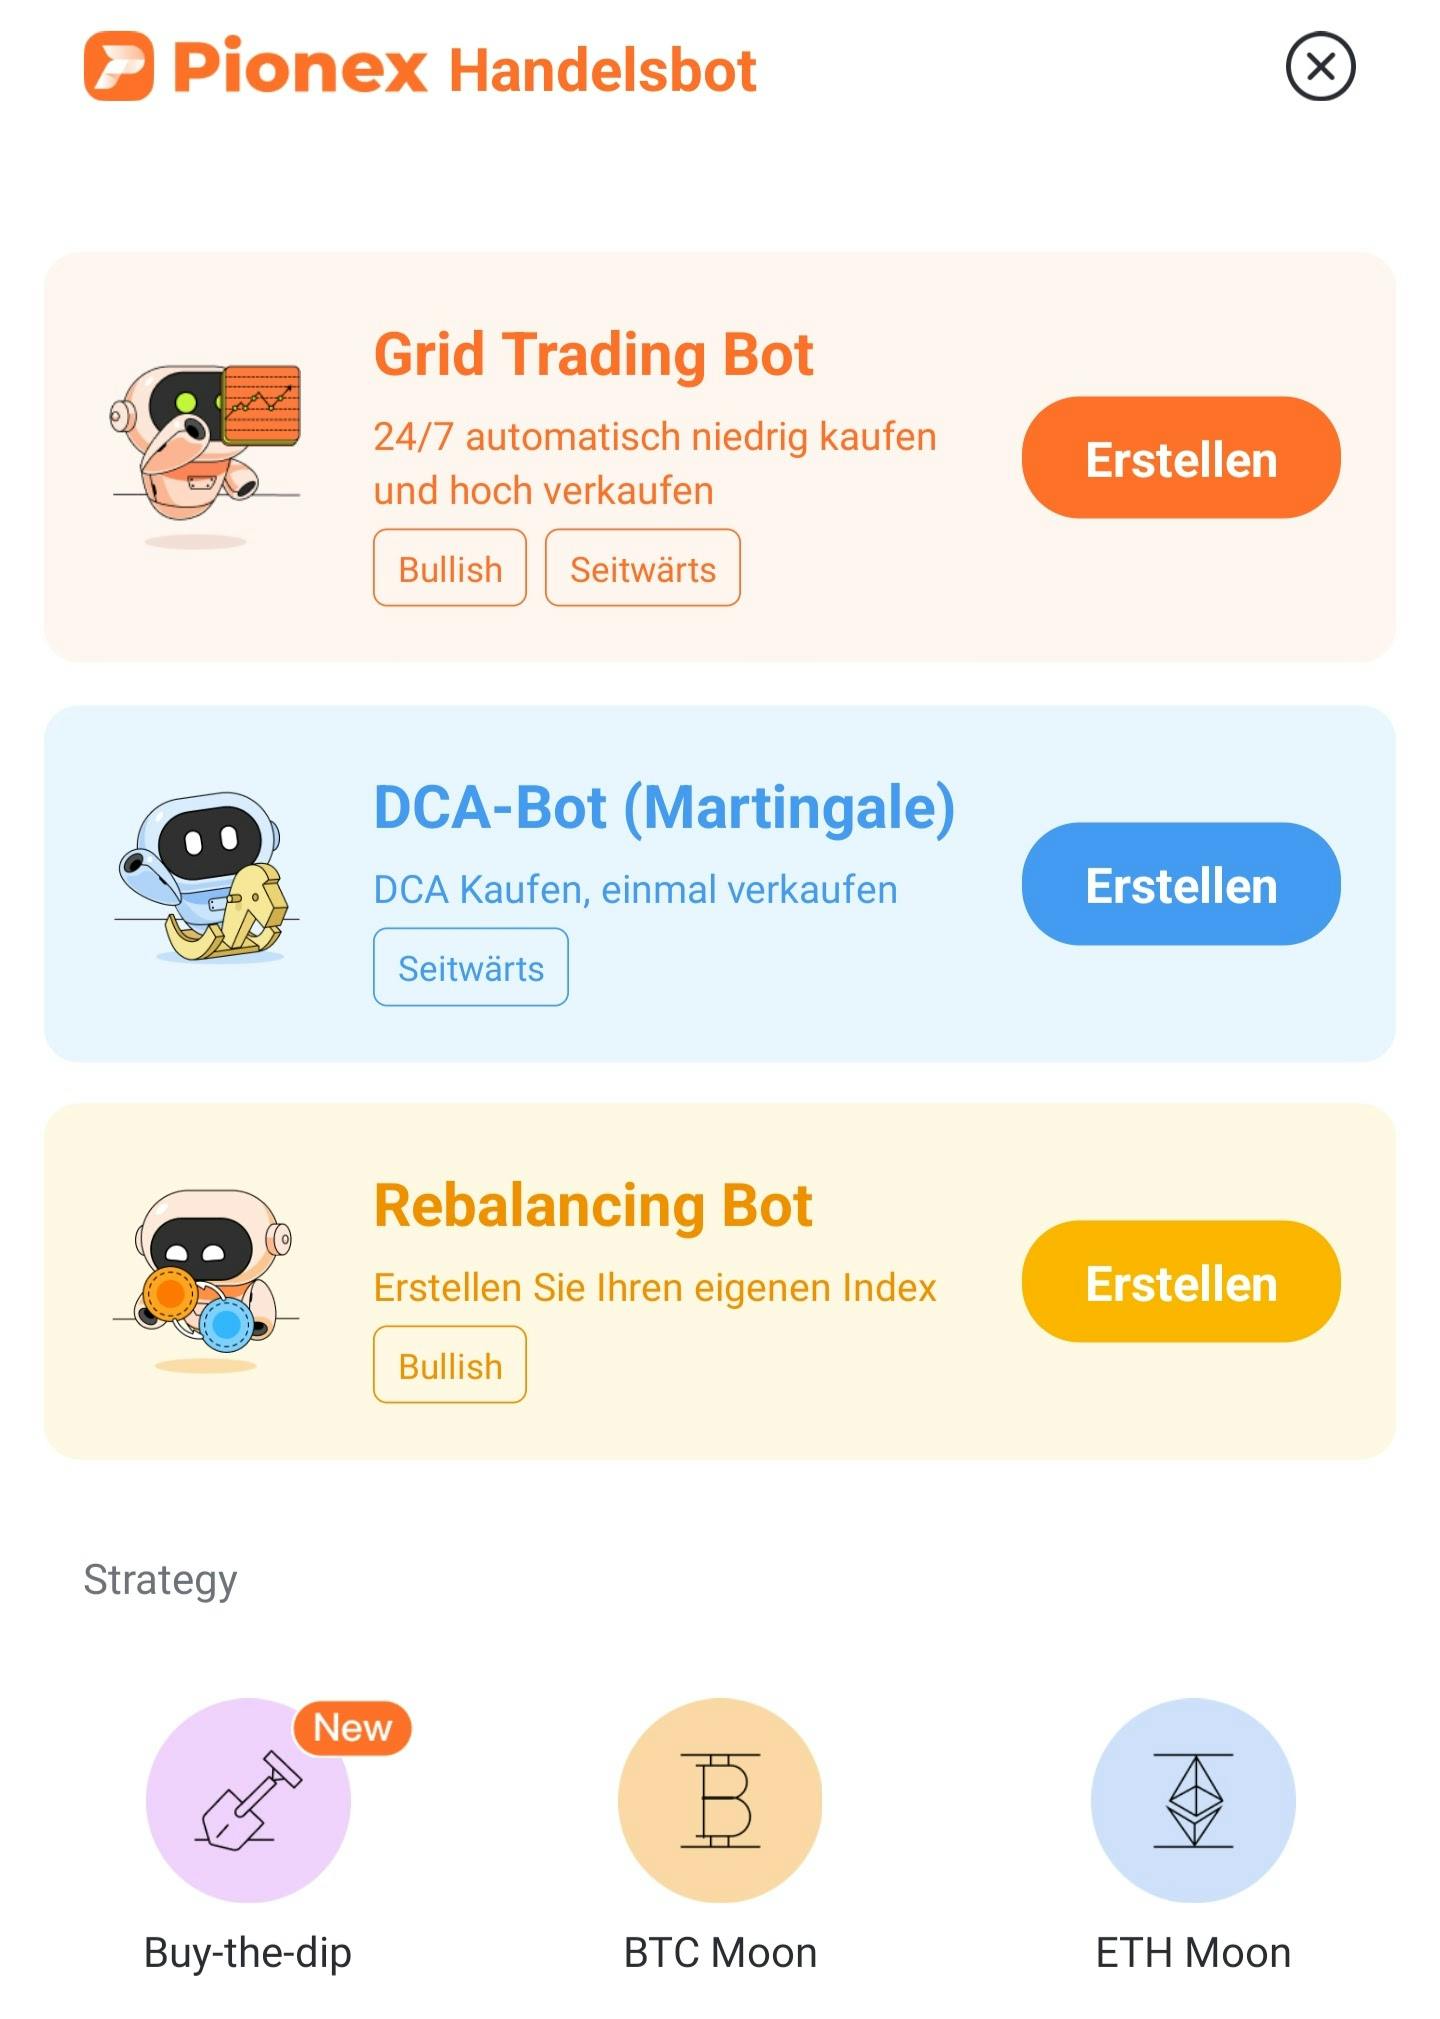 "Grid Trading Bot" auswählen